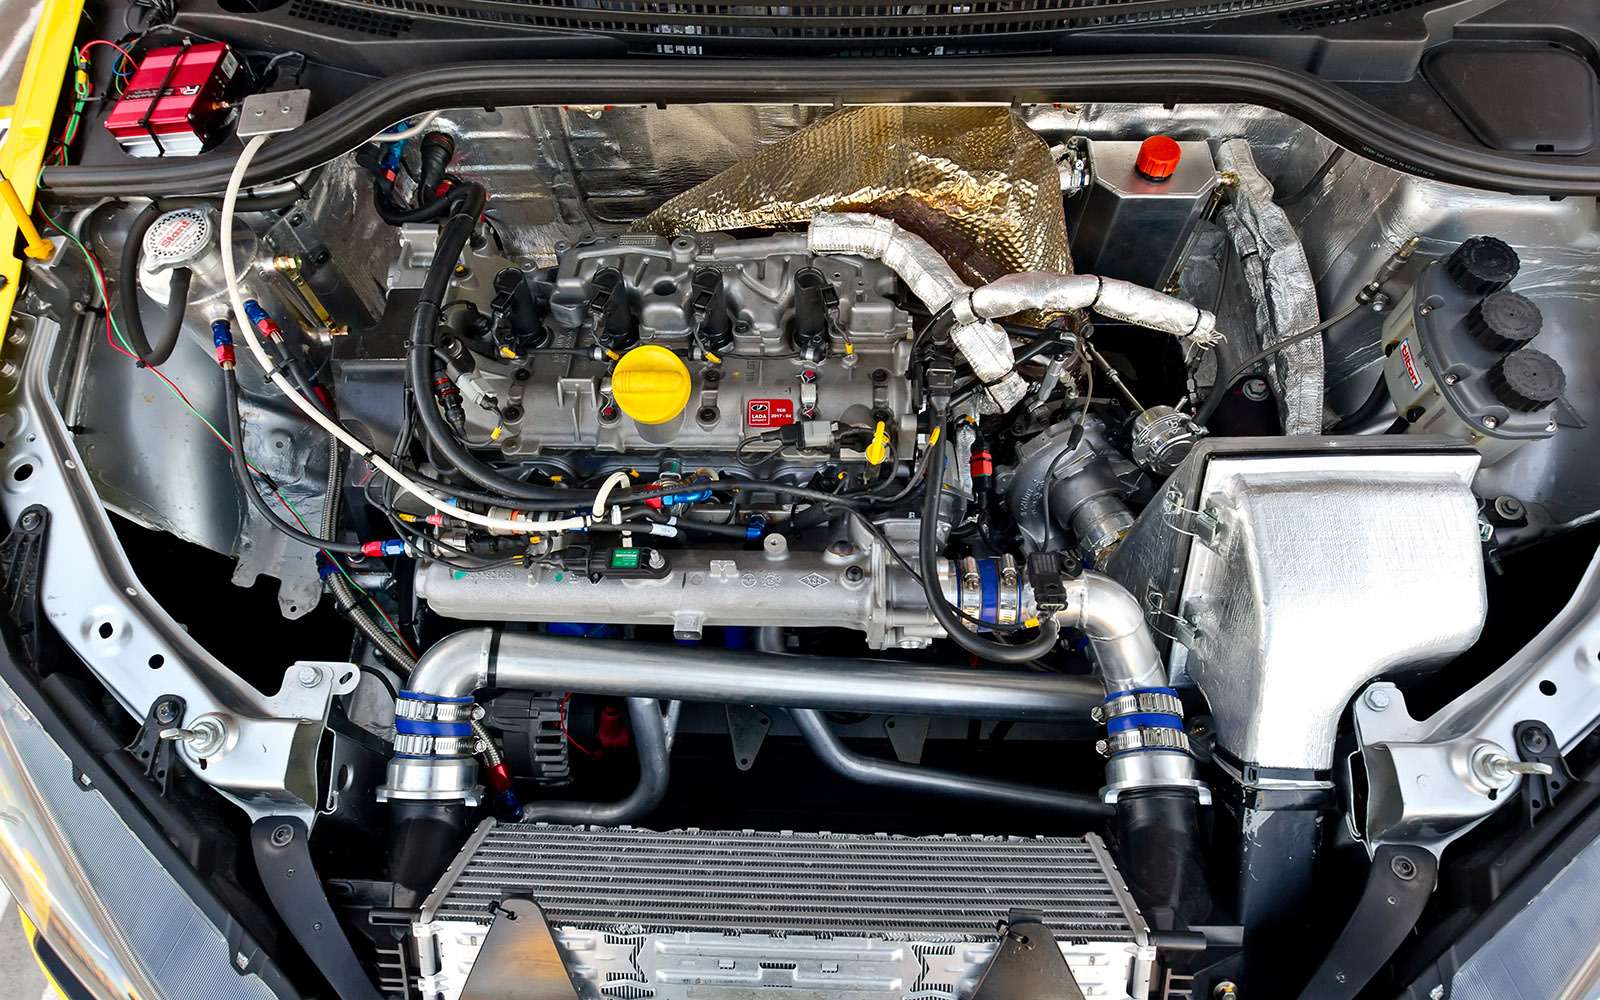 Двигатель Renault FR4T, который на гражданском хэтче Megane RS развивает 265 л.с., благодаря более производительной турбине от BMW выдает 350 л.с. и 410 Н·м. Настройкой занимались французы из фирмы Oreca.